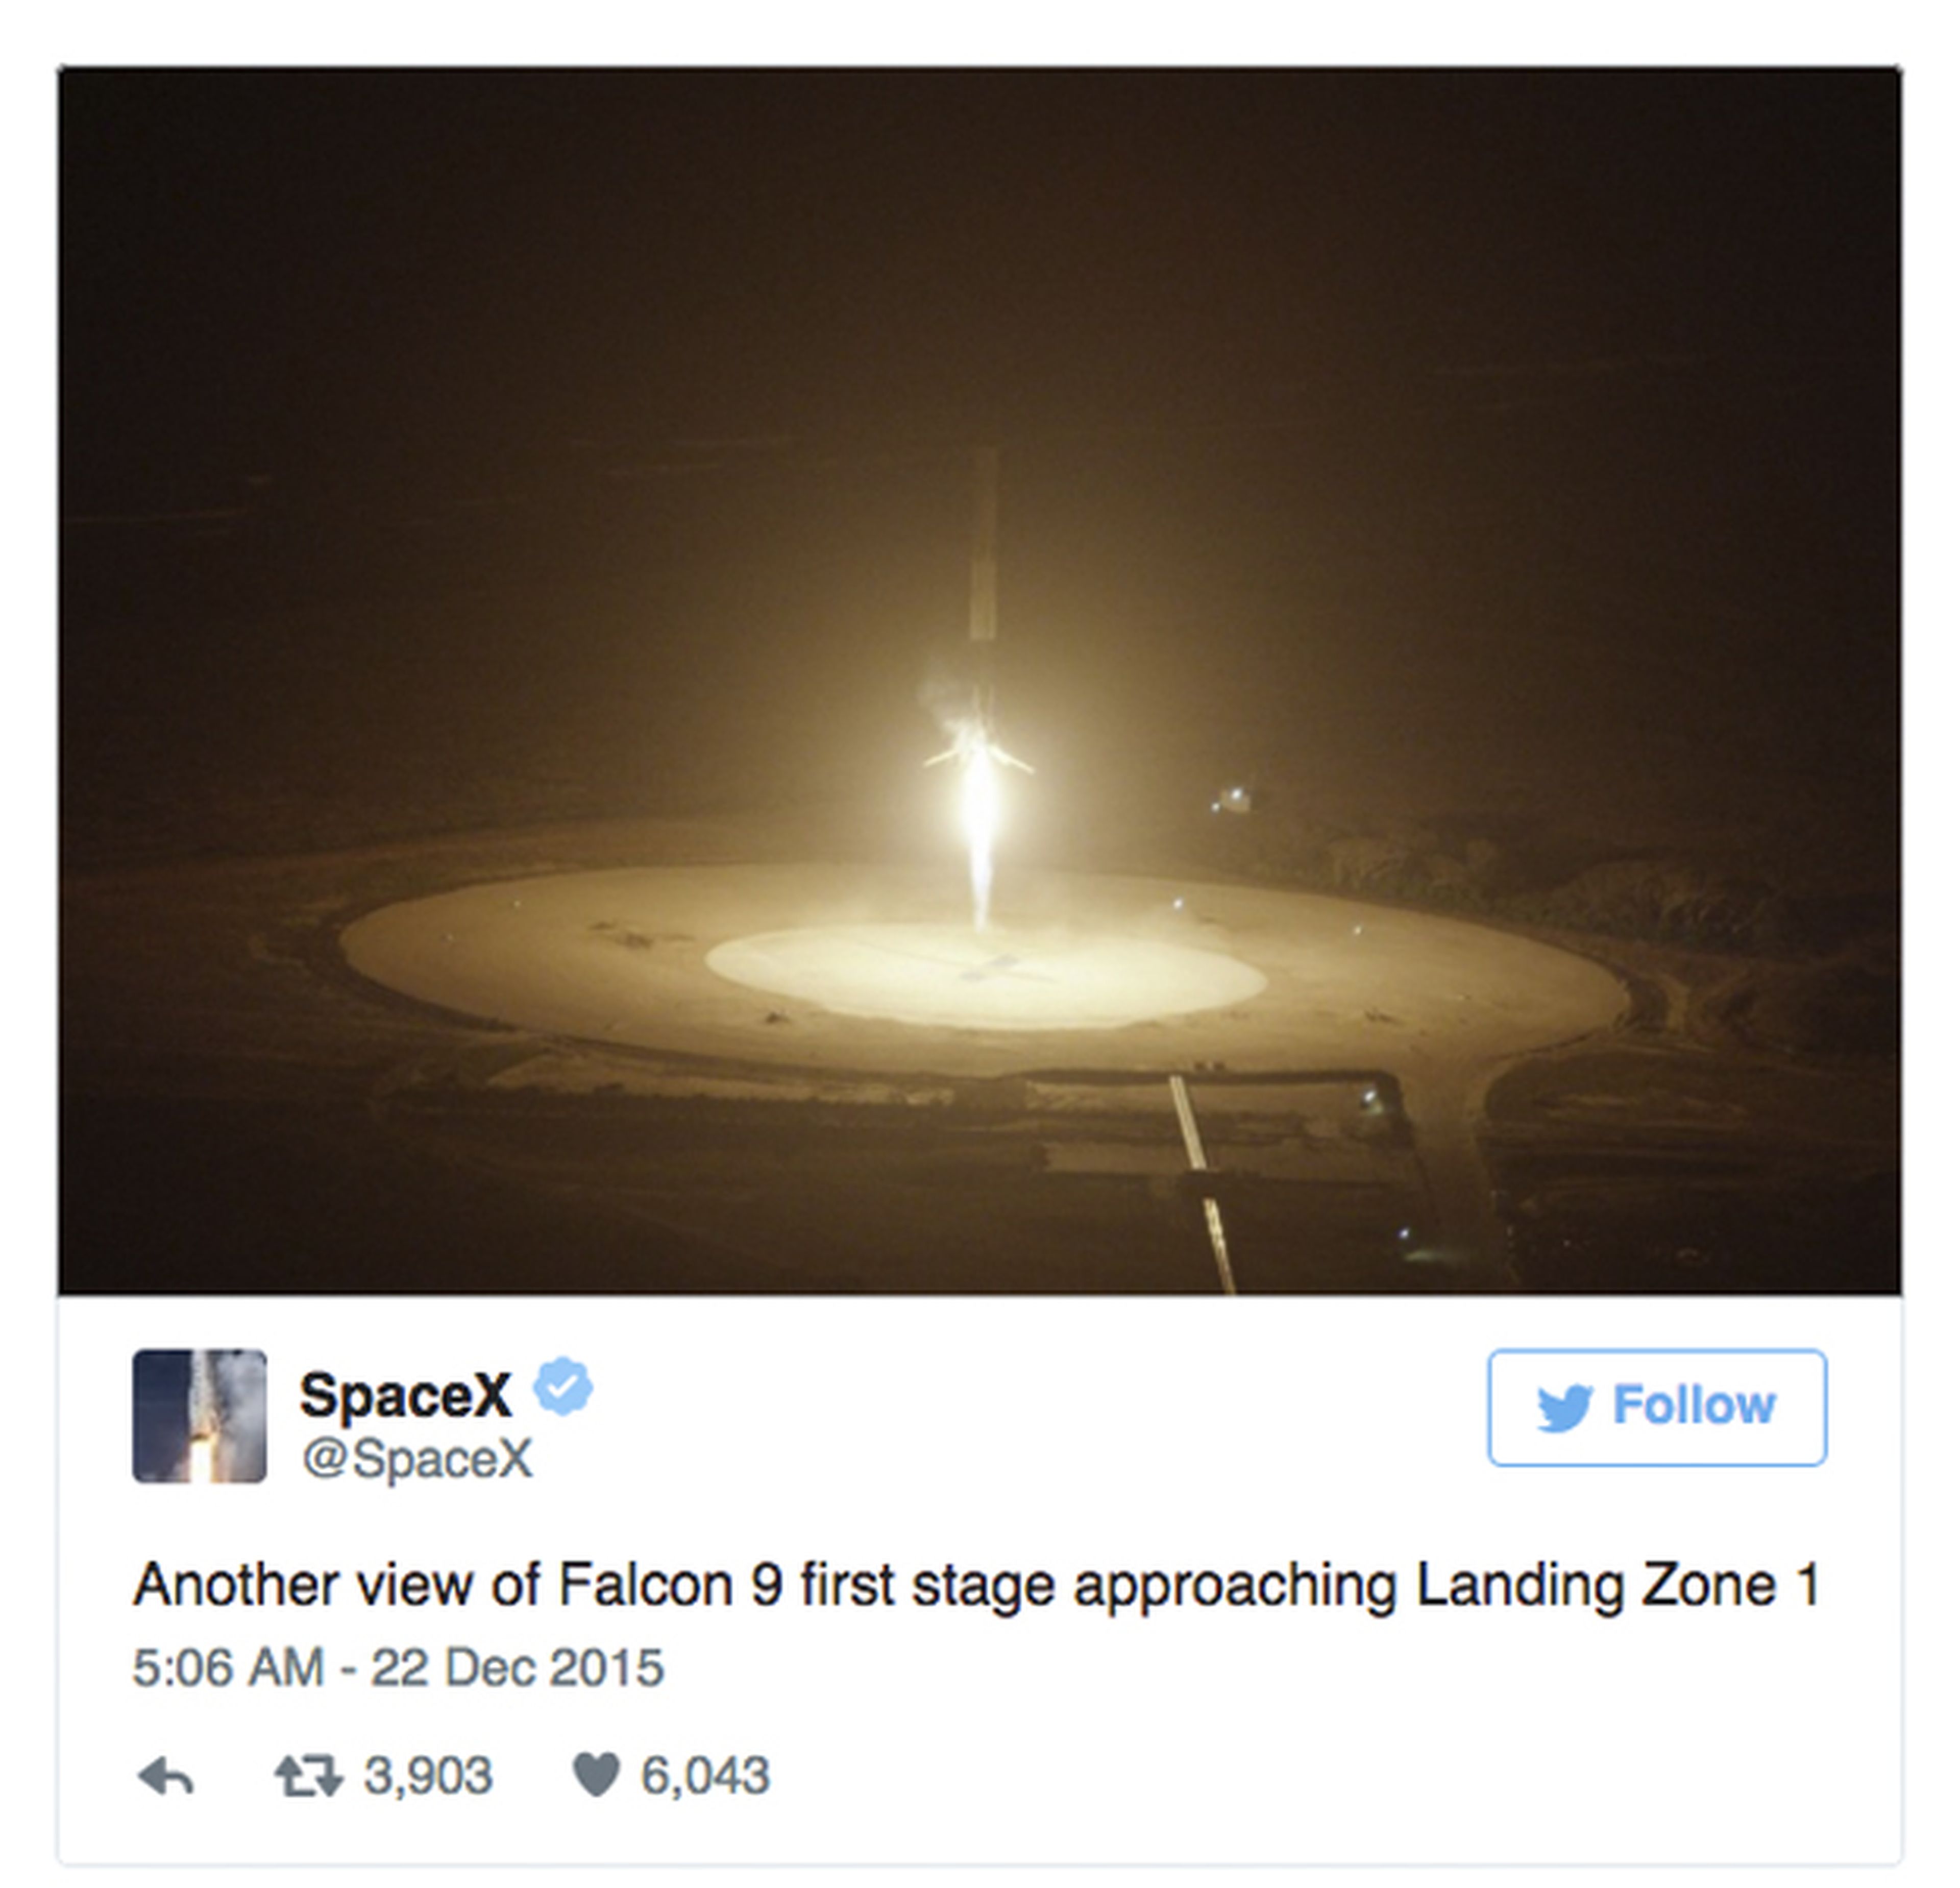 SpaceX publicación en Twitter